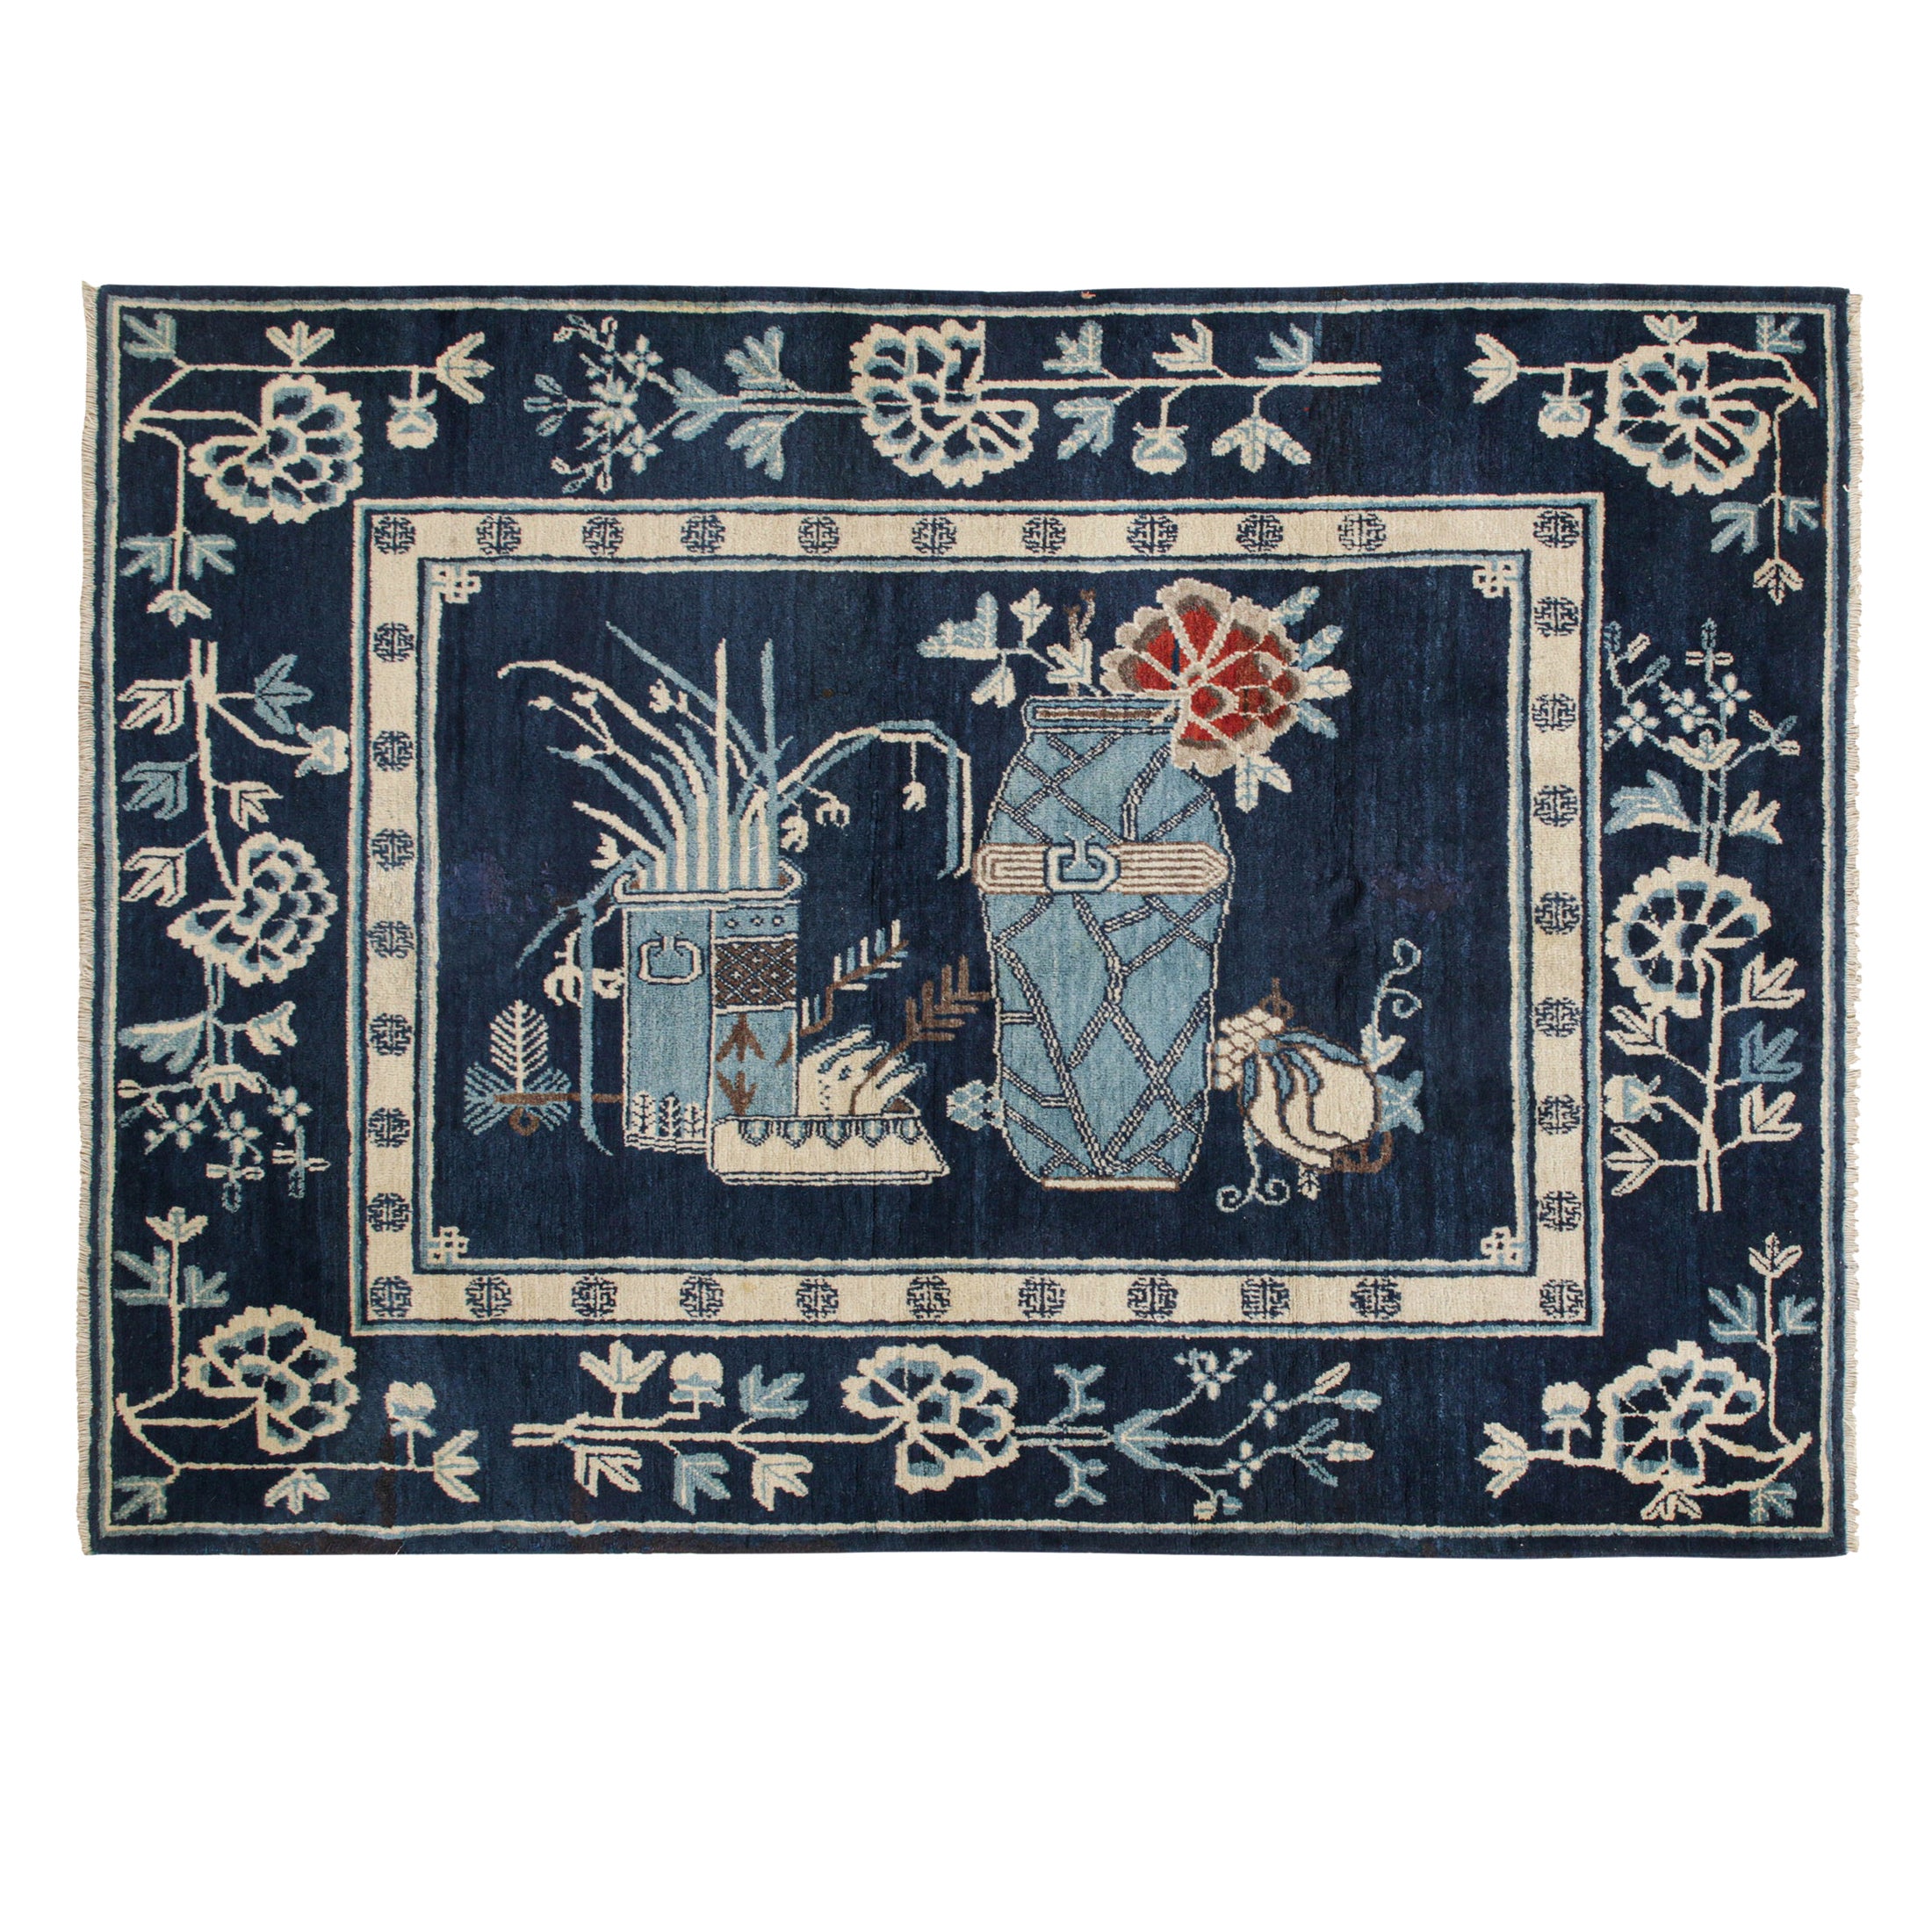 Antiker chinesischer Art-Déco-Teppich in Marineblau mit malerischem Muster, aus Teppich und Kelim